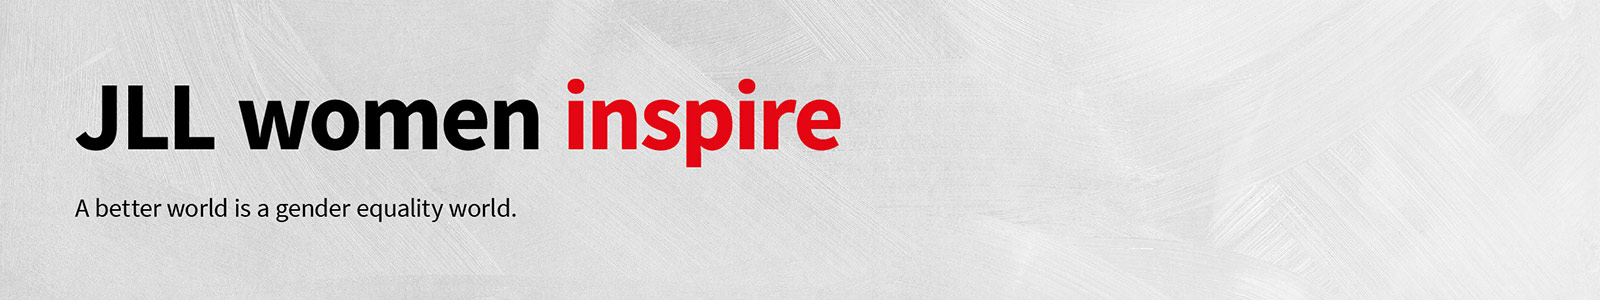 jll-inspire-white-web-banner